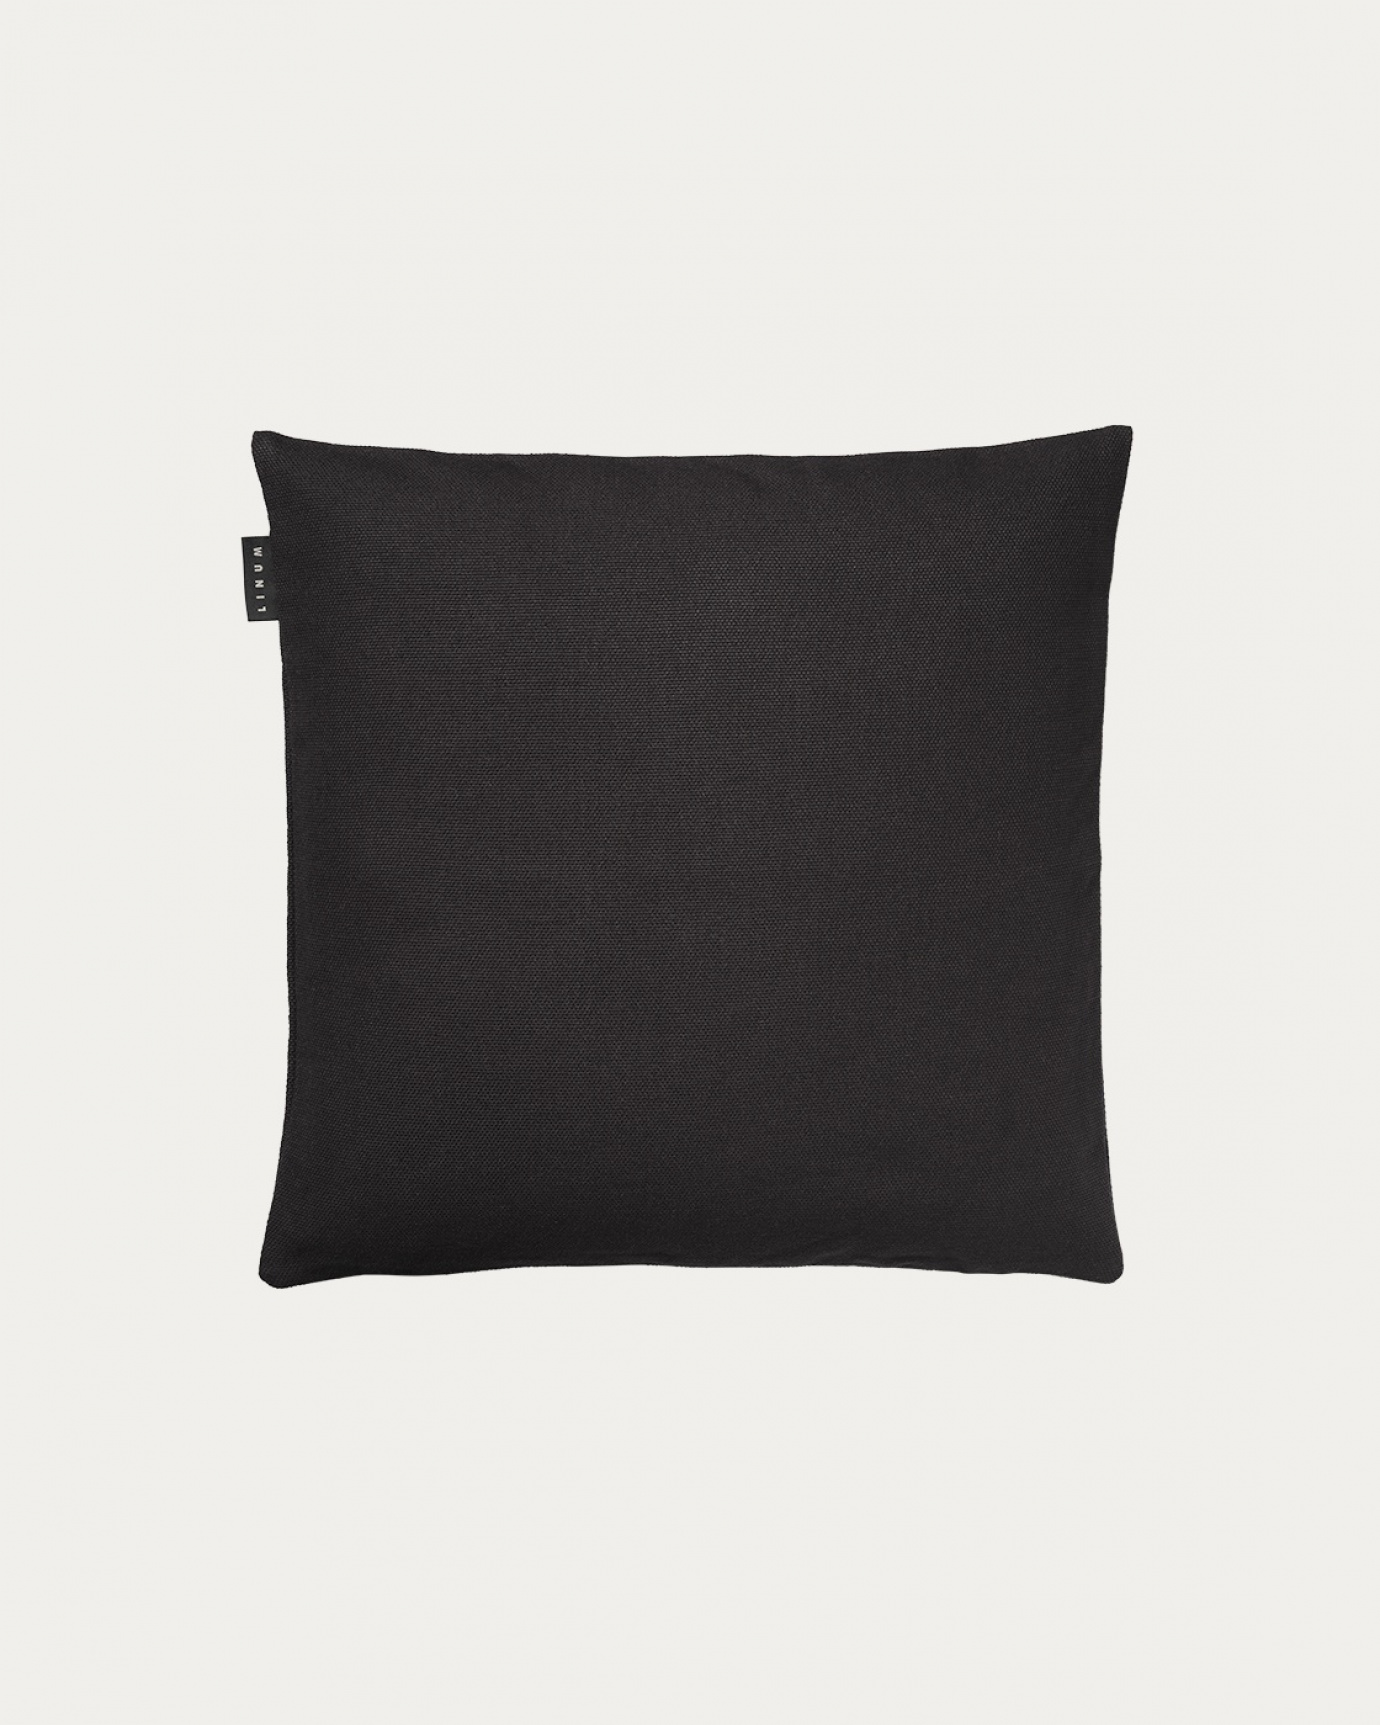 Image du produit housse de coussin PEPPER noir melange en coton doux de LINUM DESIGN. Facile à laver et durable pendant des générations. Taille 40 x 40 cm.